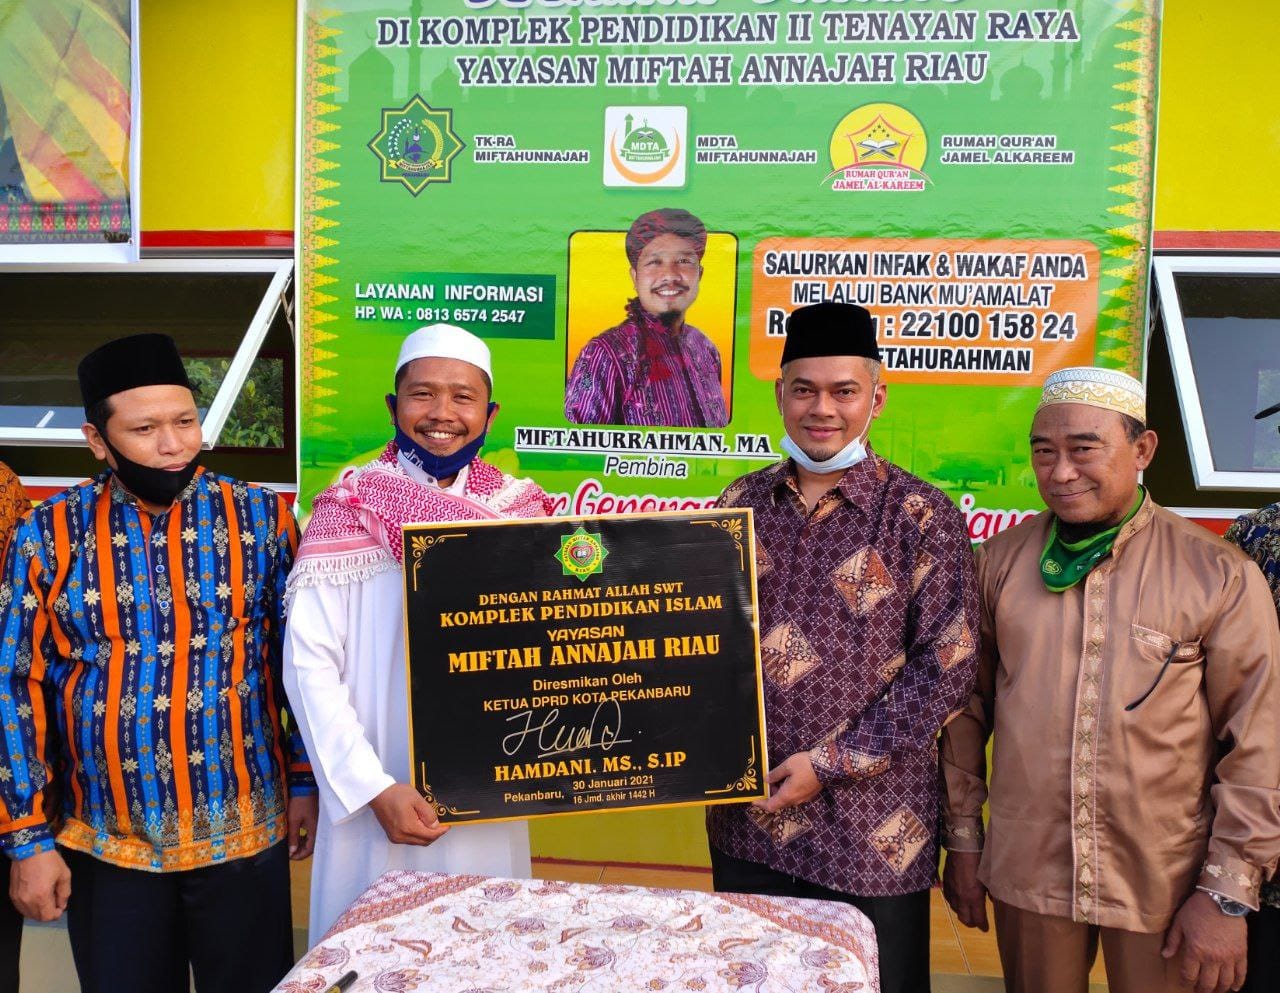 Resmikan Komplek Pendidikan Islam Yayasan Miftah Annajah Riau,Hamdani:Ciptakan Gerasi Islam yang Hebat 